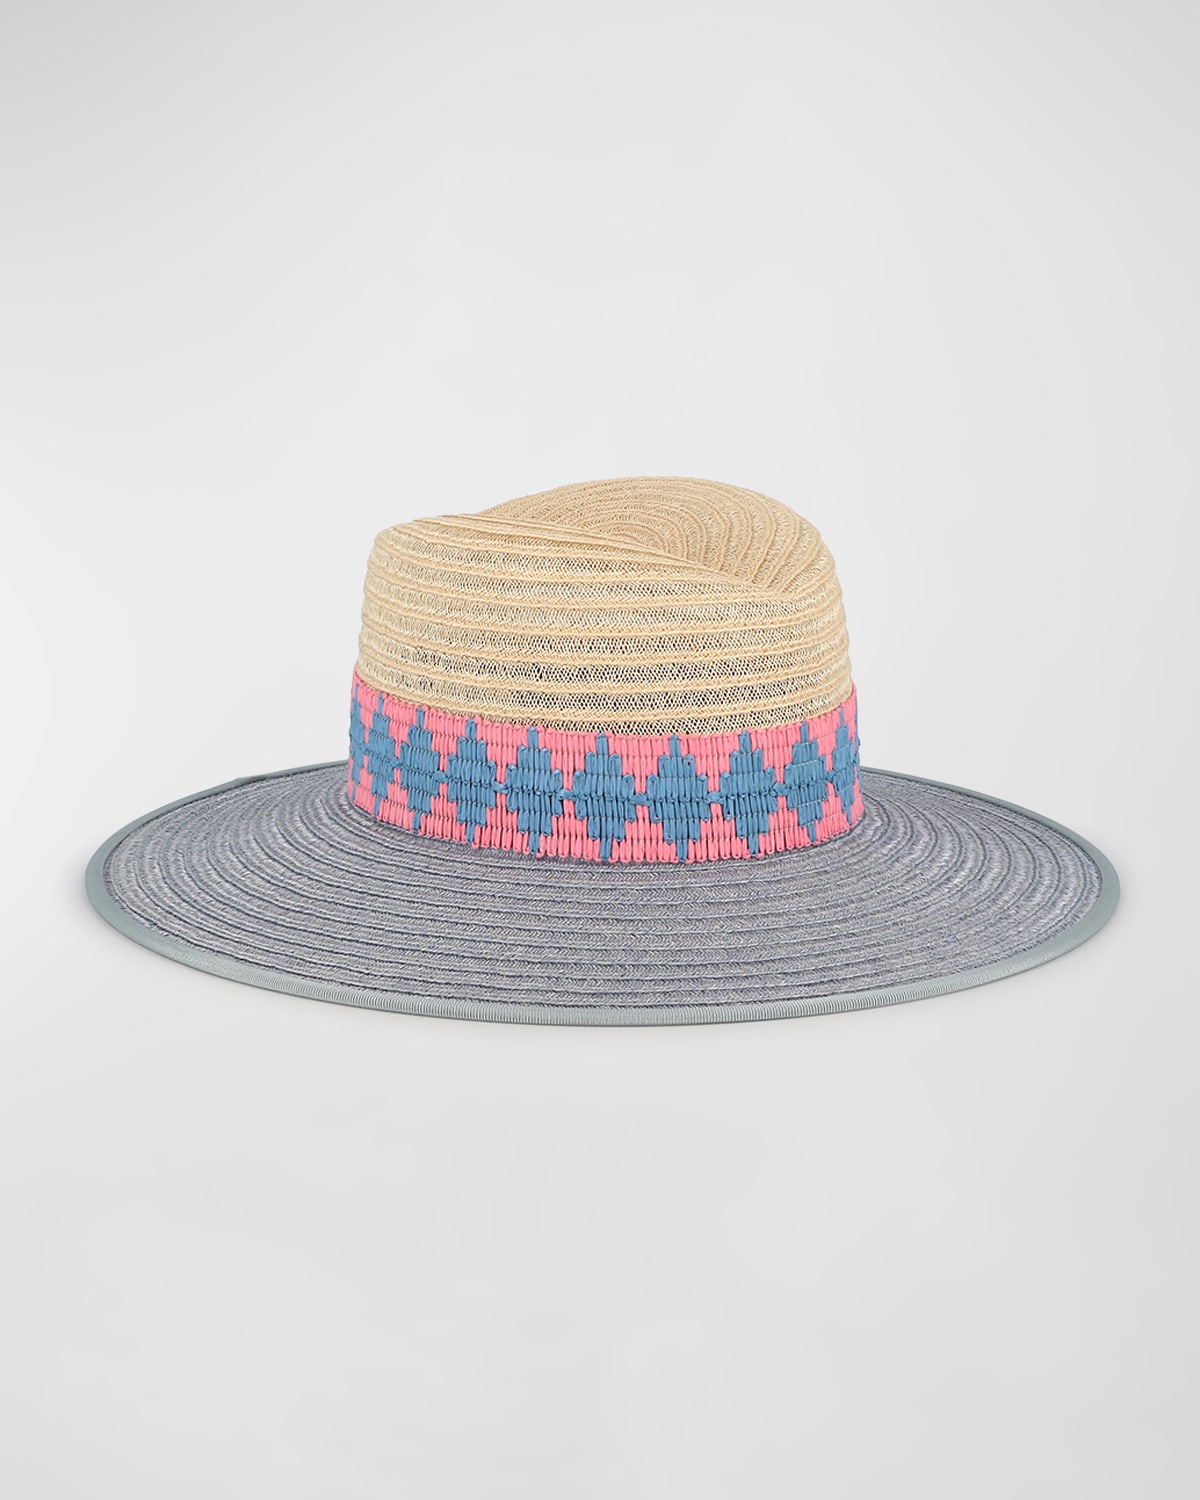 D'estree Cindy Bi-color Wide Brim Straw Fedora Hat In Natural Light Blu